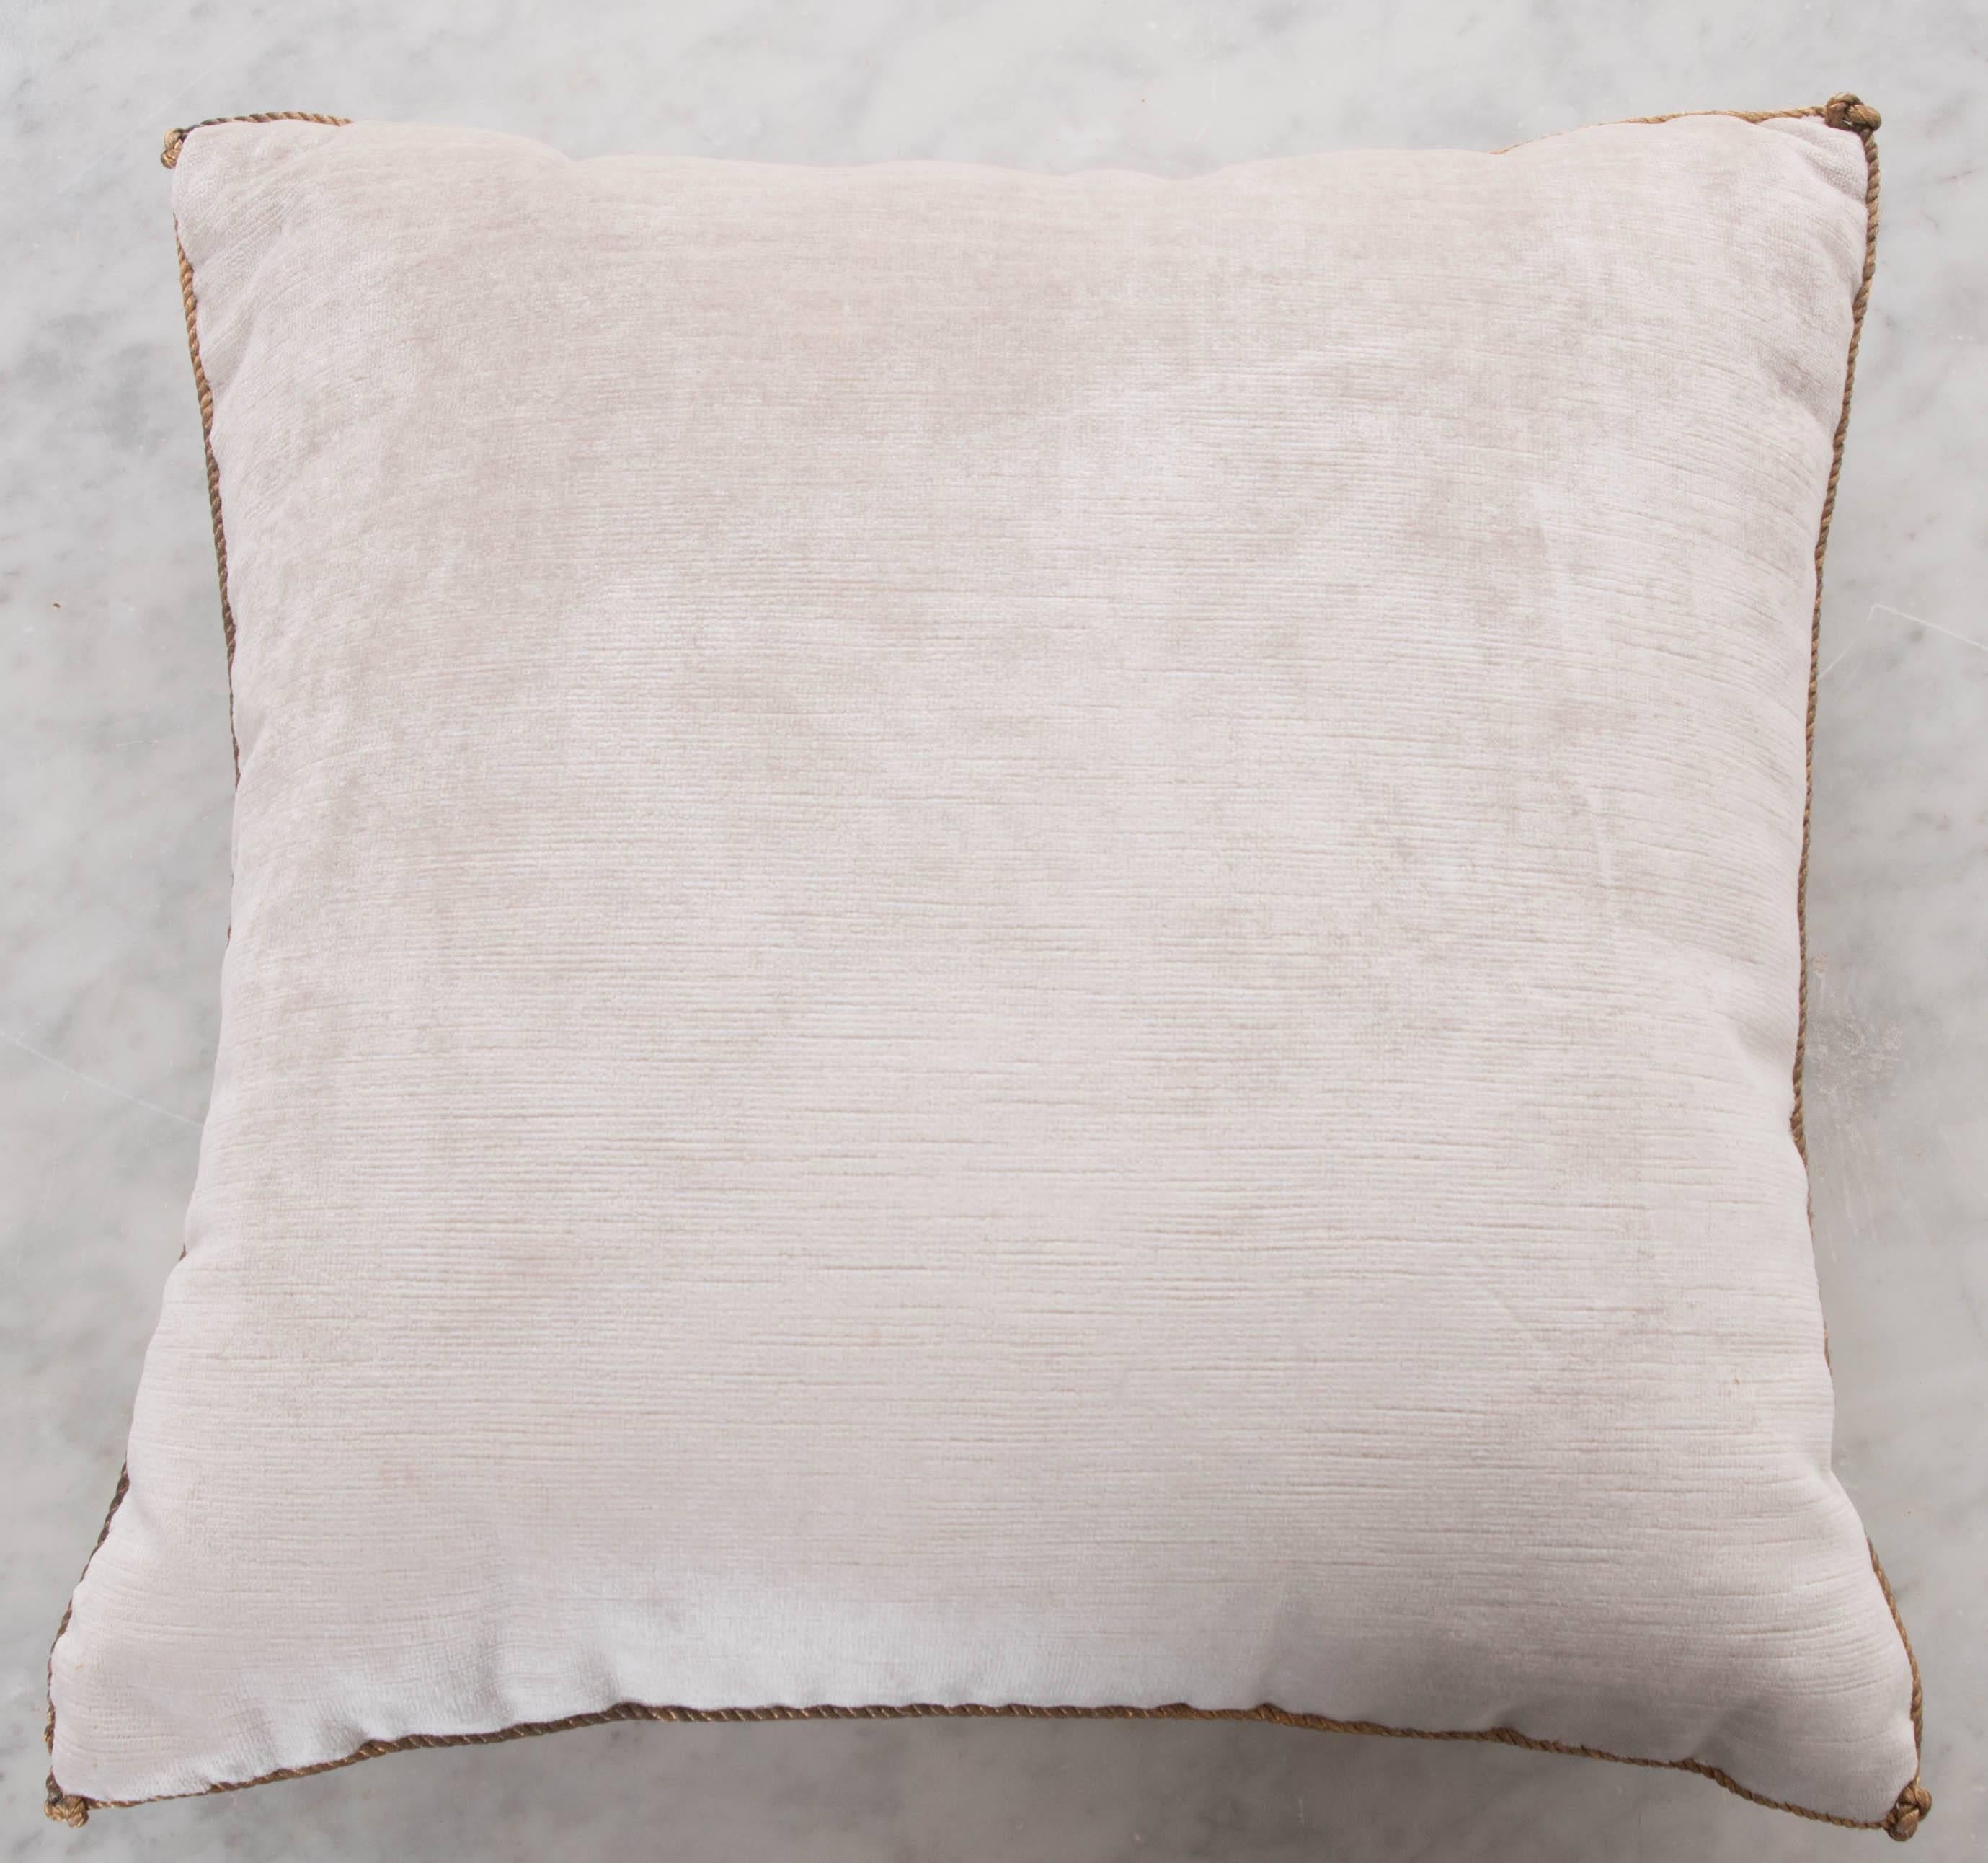 American Antique Textile Pillow by B.Viz Designs